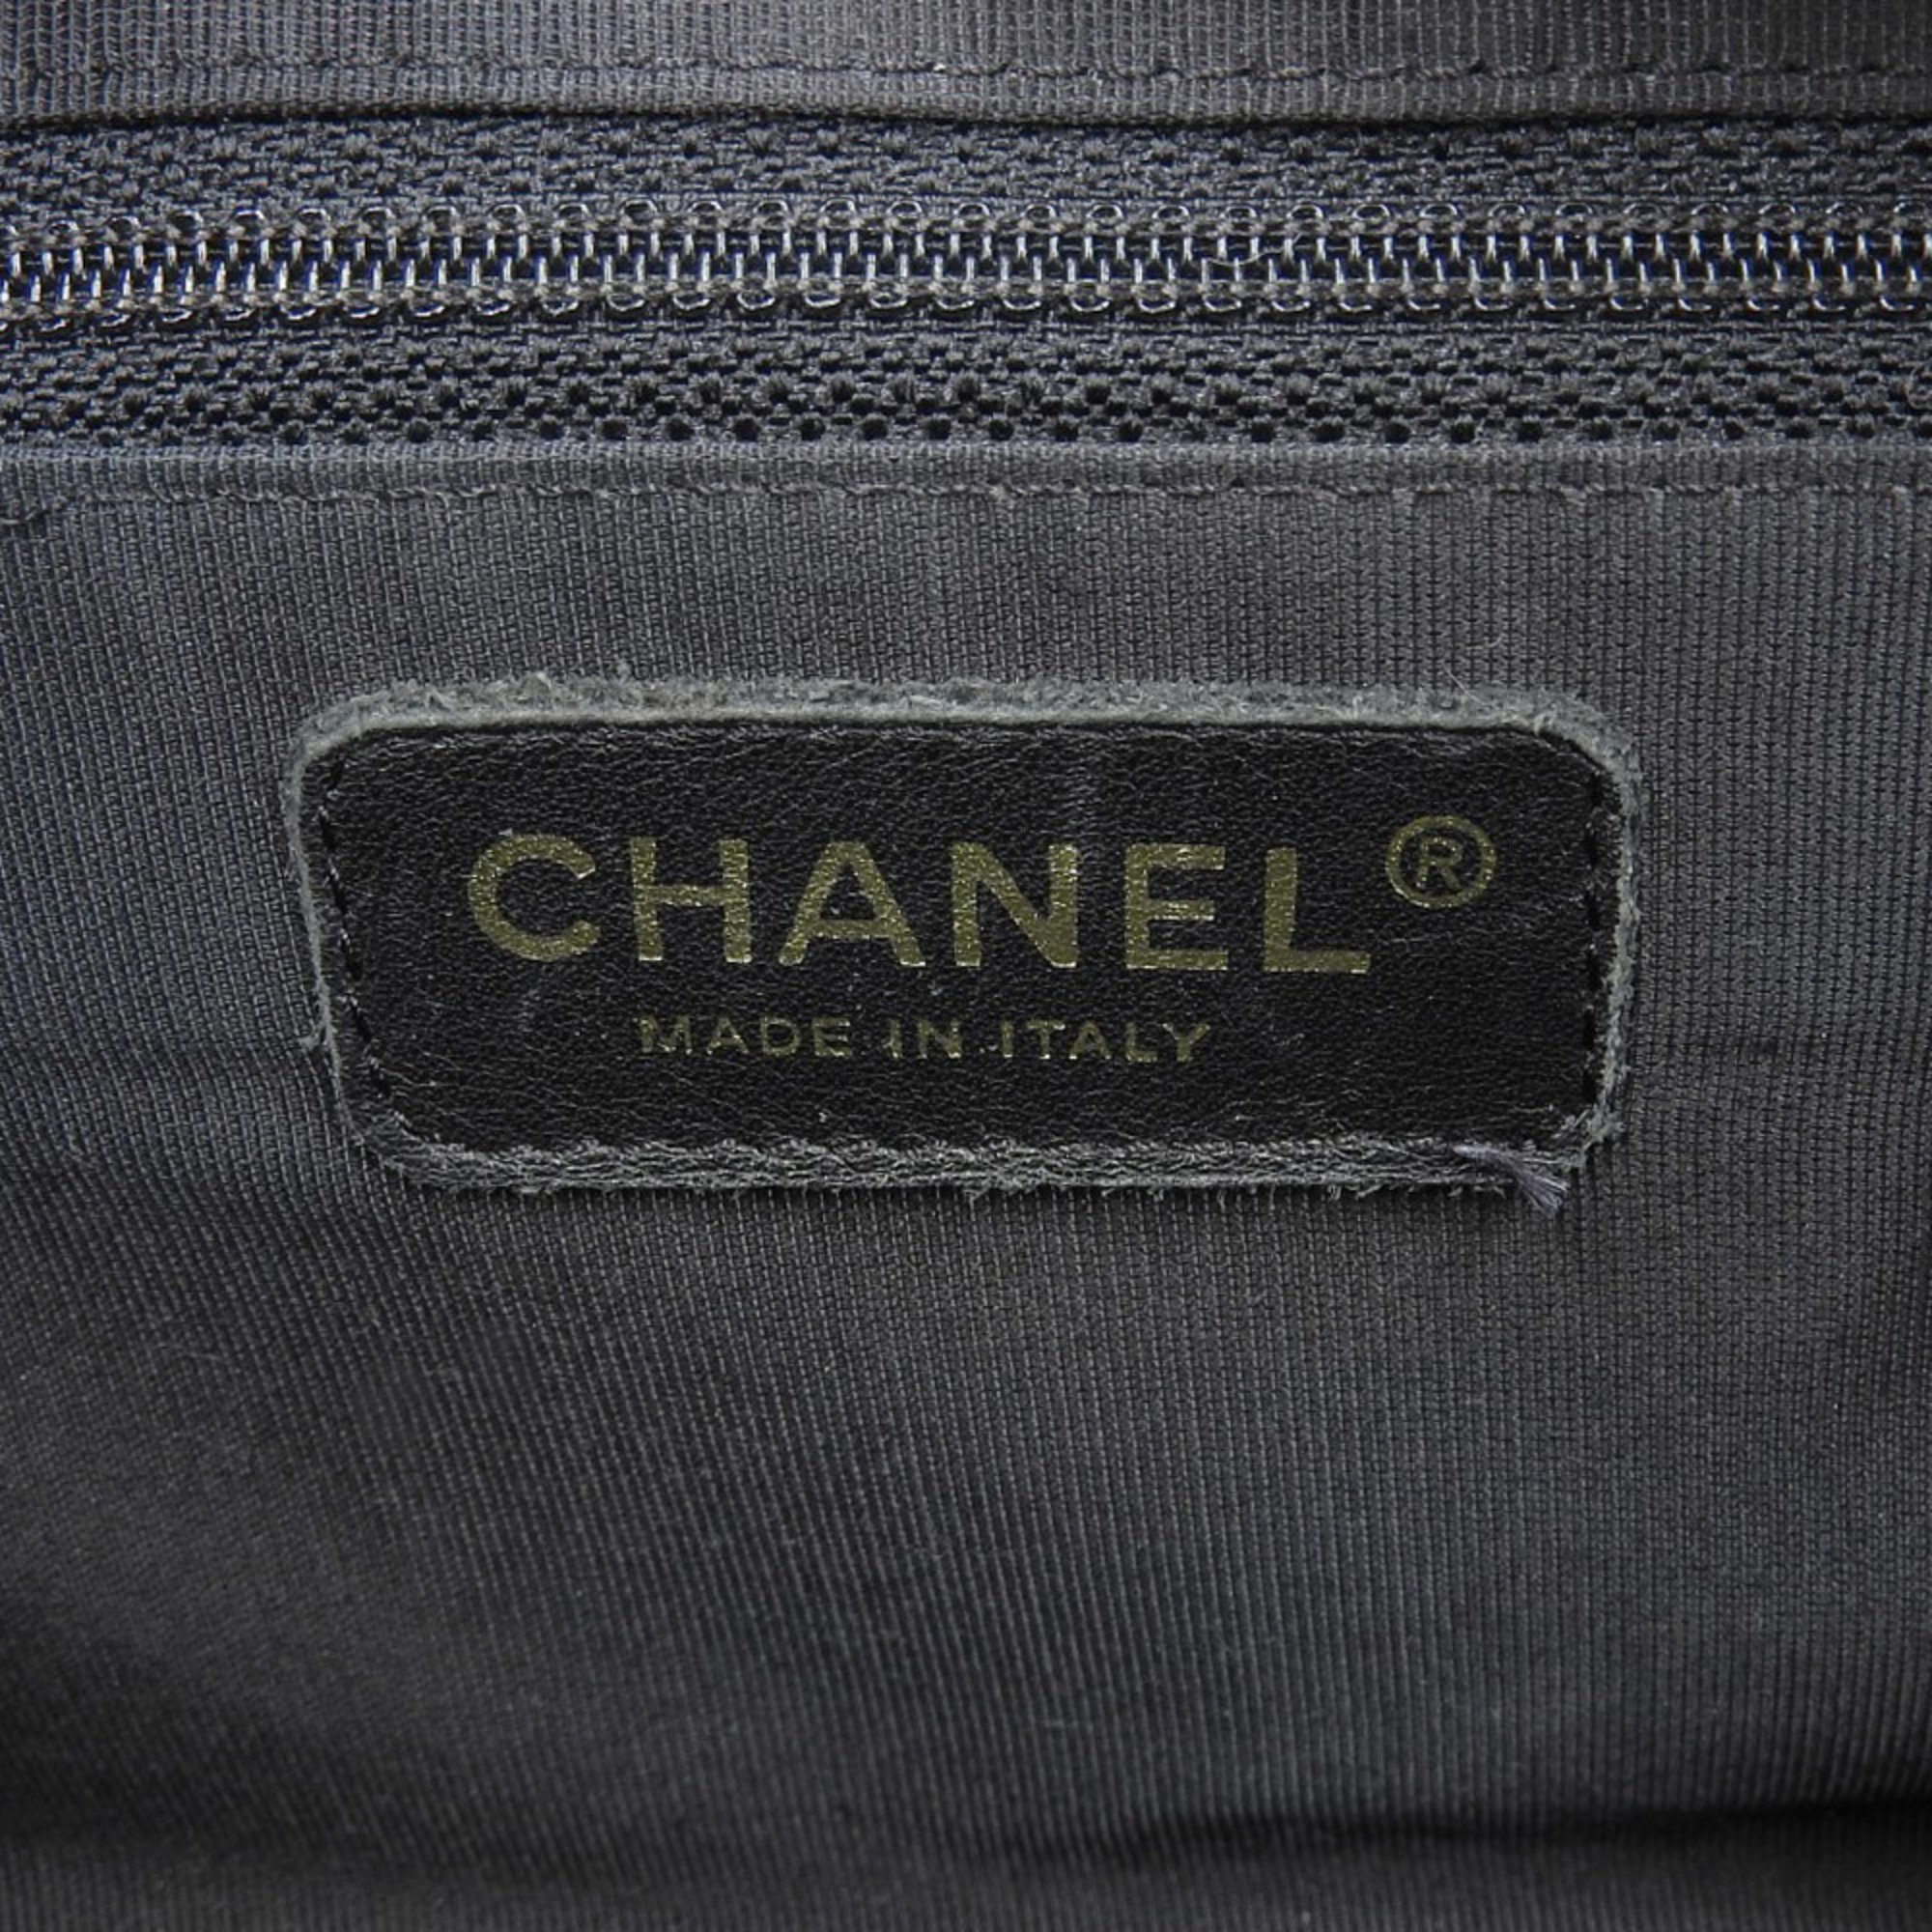 Chanel CHANEL Coco Mark Boston Bag A20996 with sticker No. 8 Boutique sticker/2004.12.11 K.R Handbag